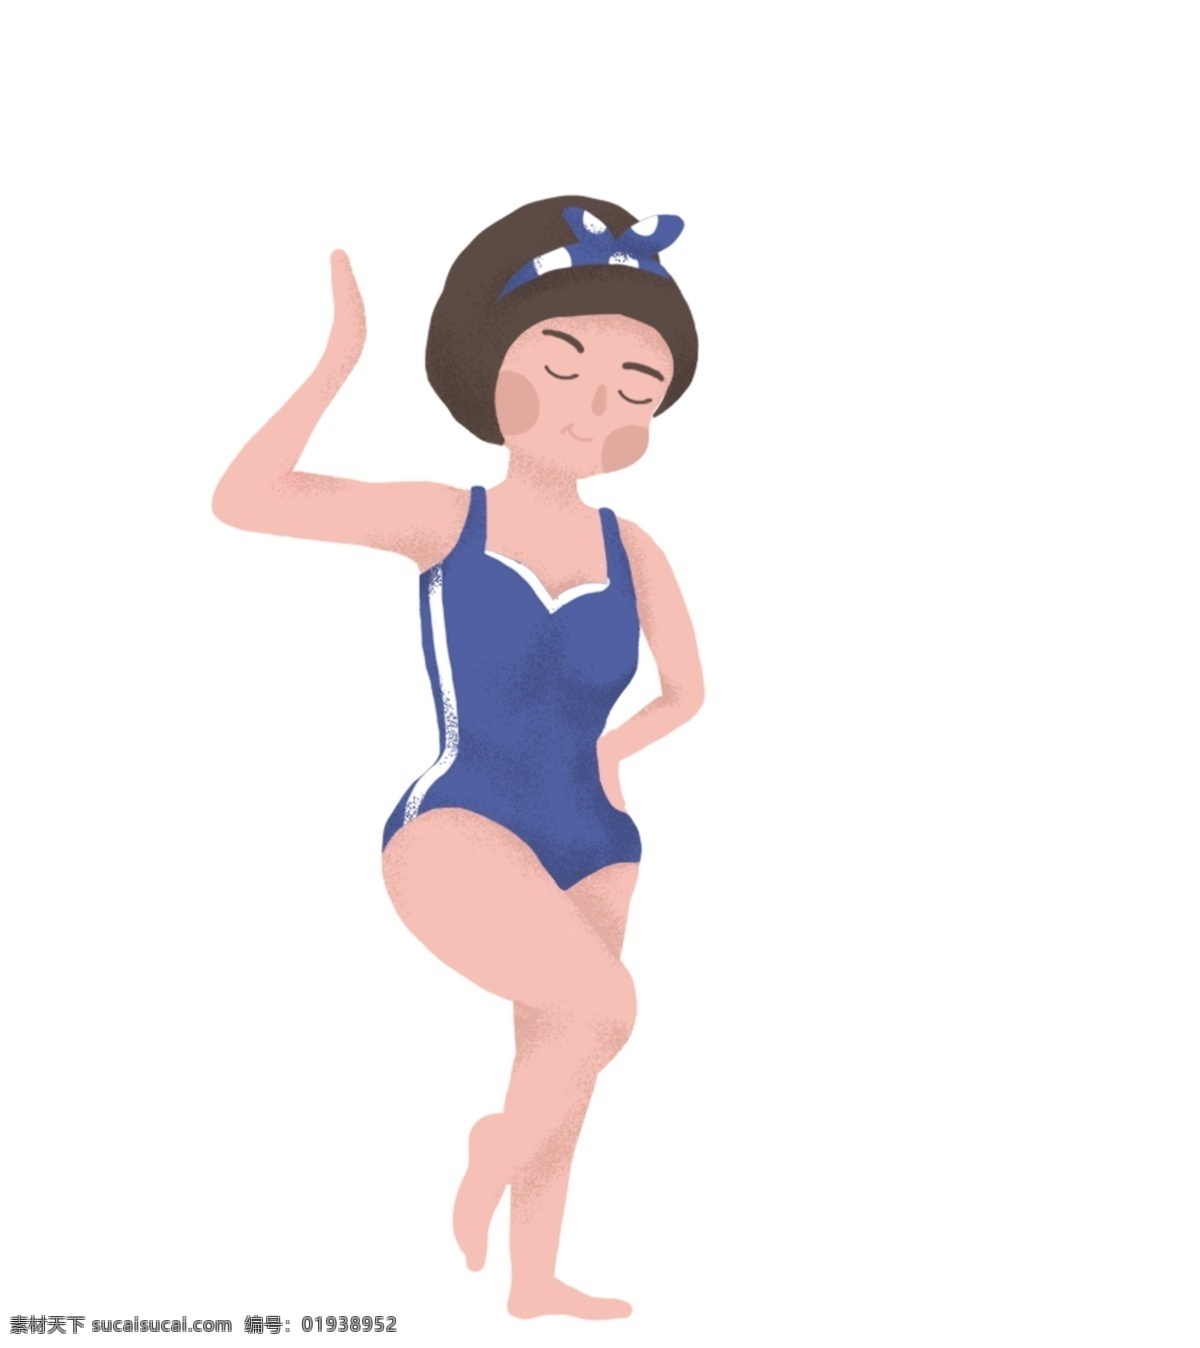 跳水 运动 运动员 插画 手绘 跳台 健身 段练身体 海滩 泳衣 女孩跳水 运动会 运动姿势